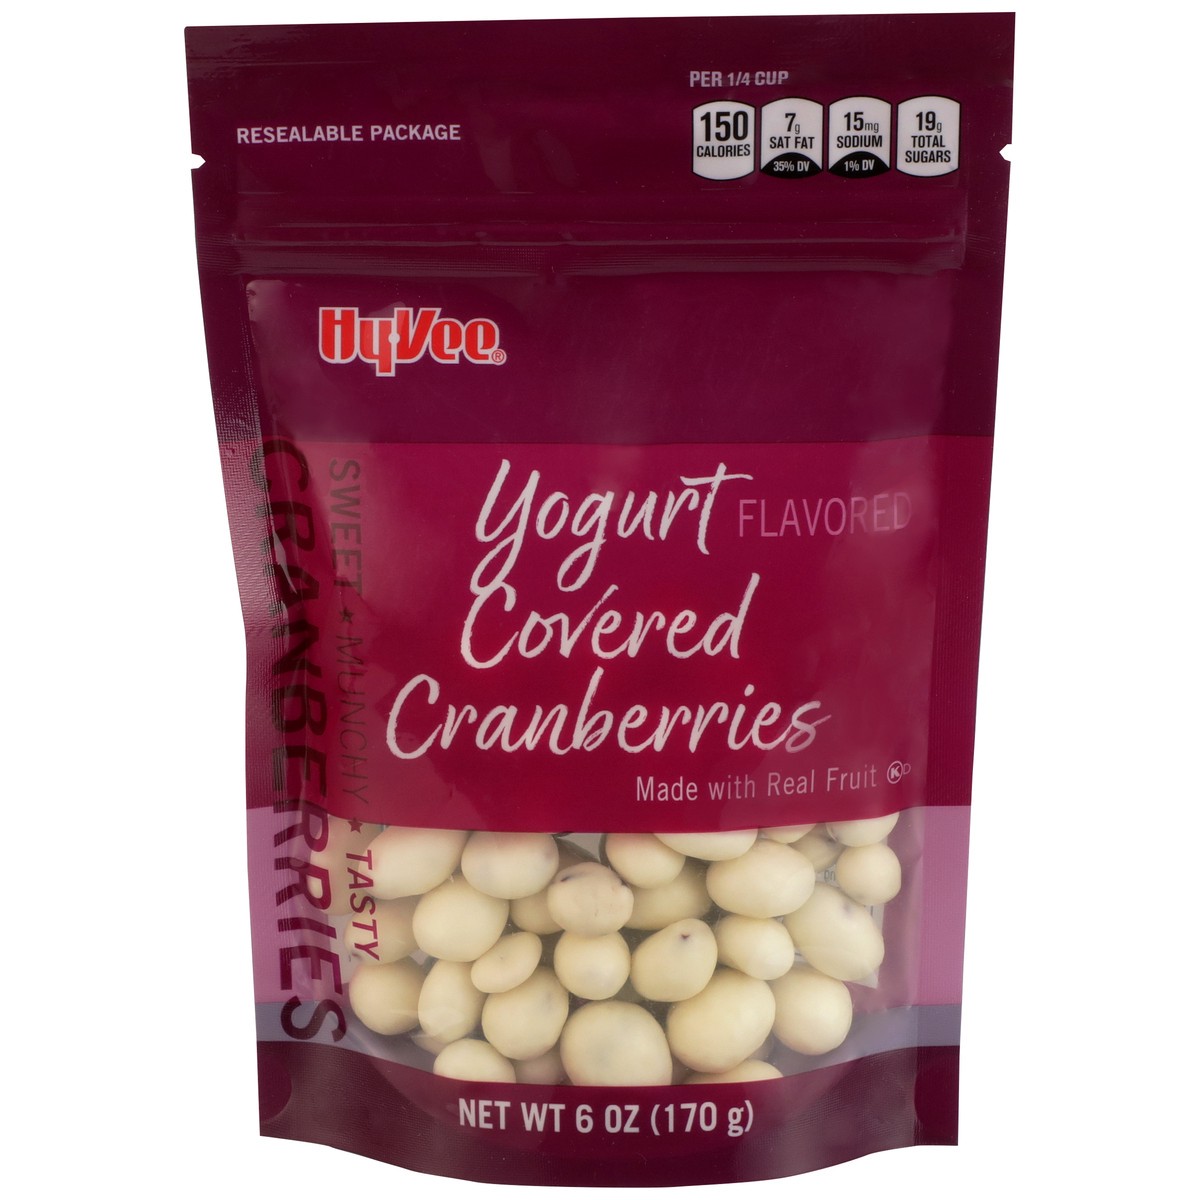 slide 1 of 8, Hy-vee Yogurt Flavored Covered Cranberries, 6 oz